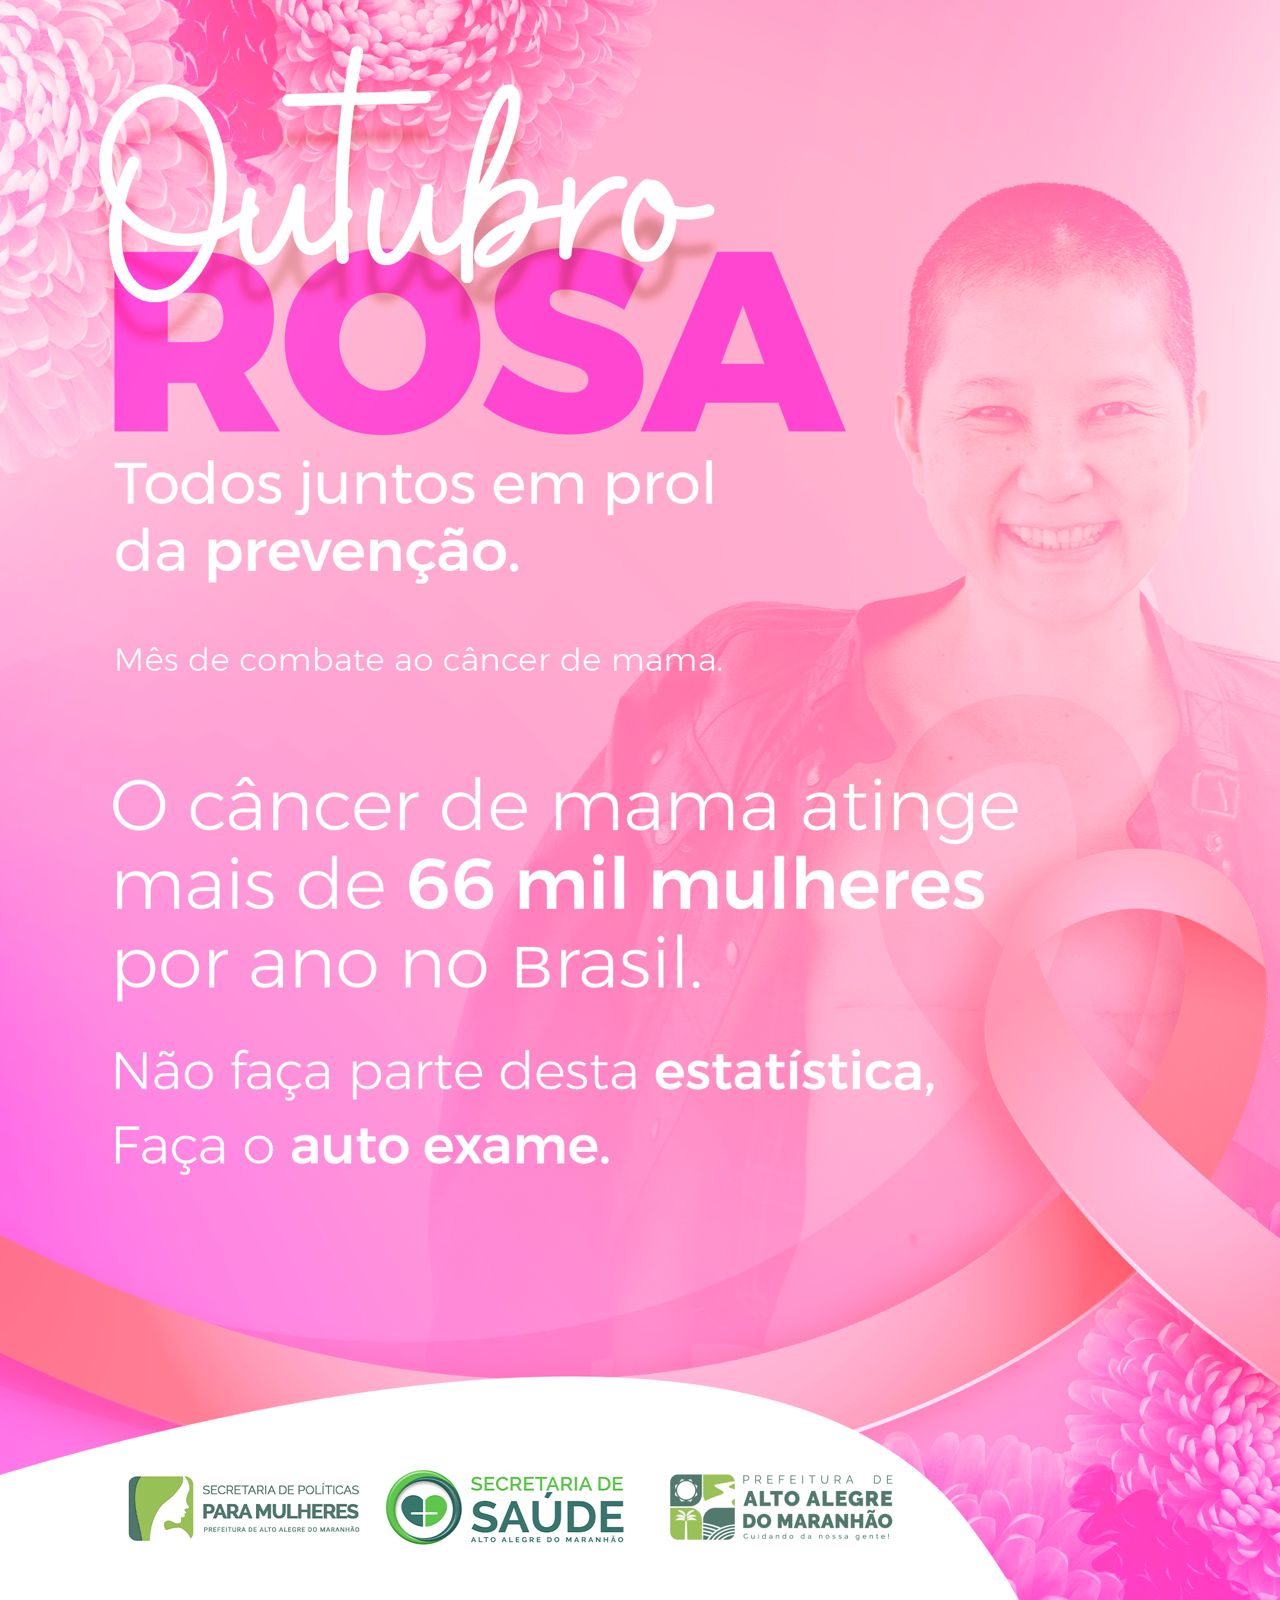 Outubro é um mês dedicado a conscientização sobre a prevenção do câncer de mama